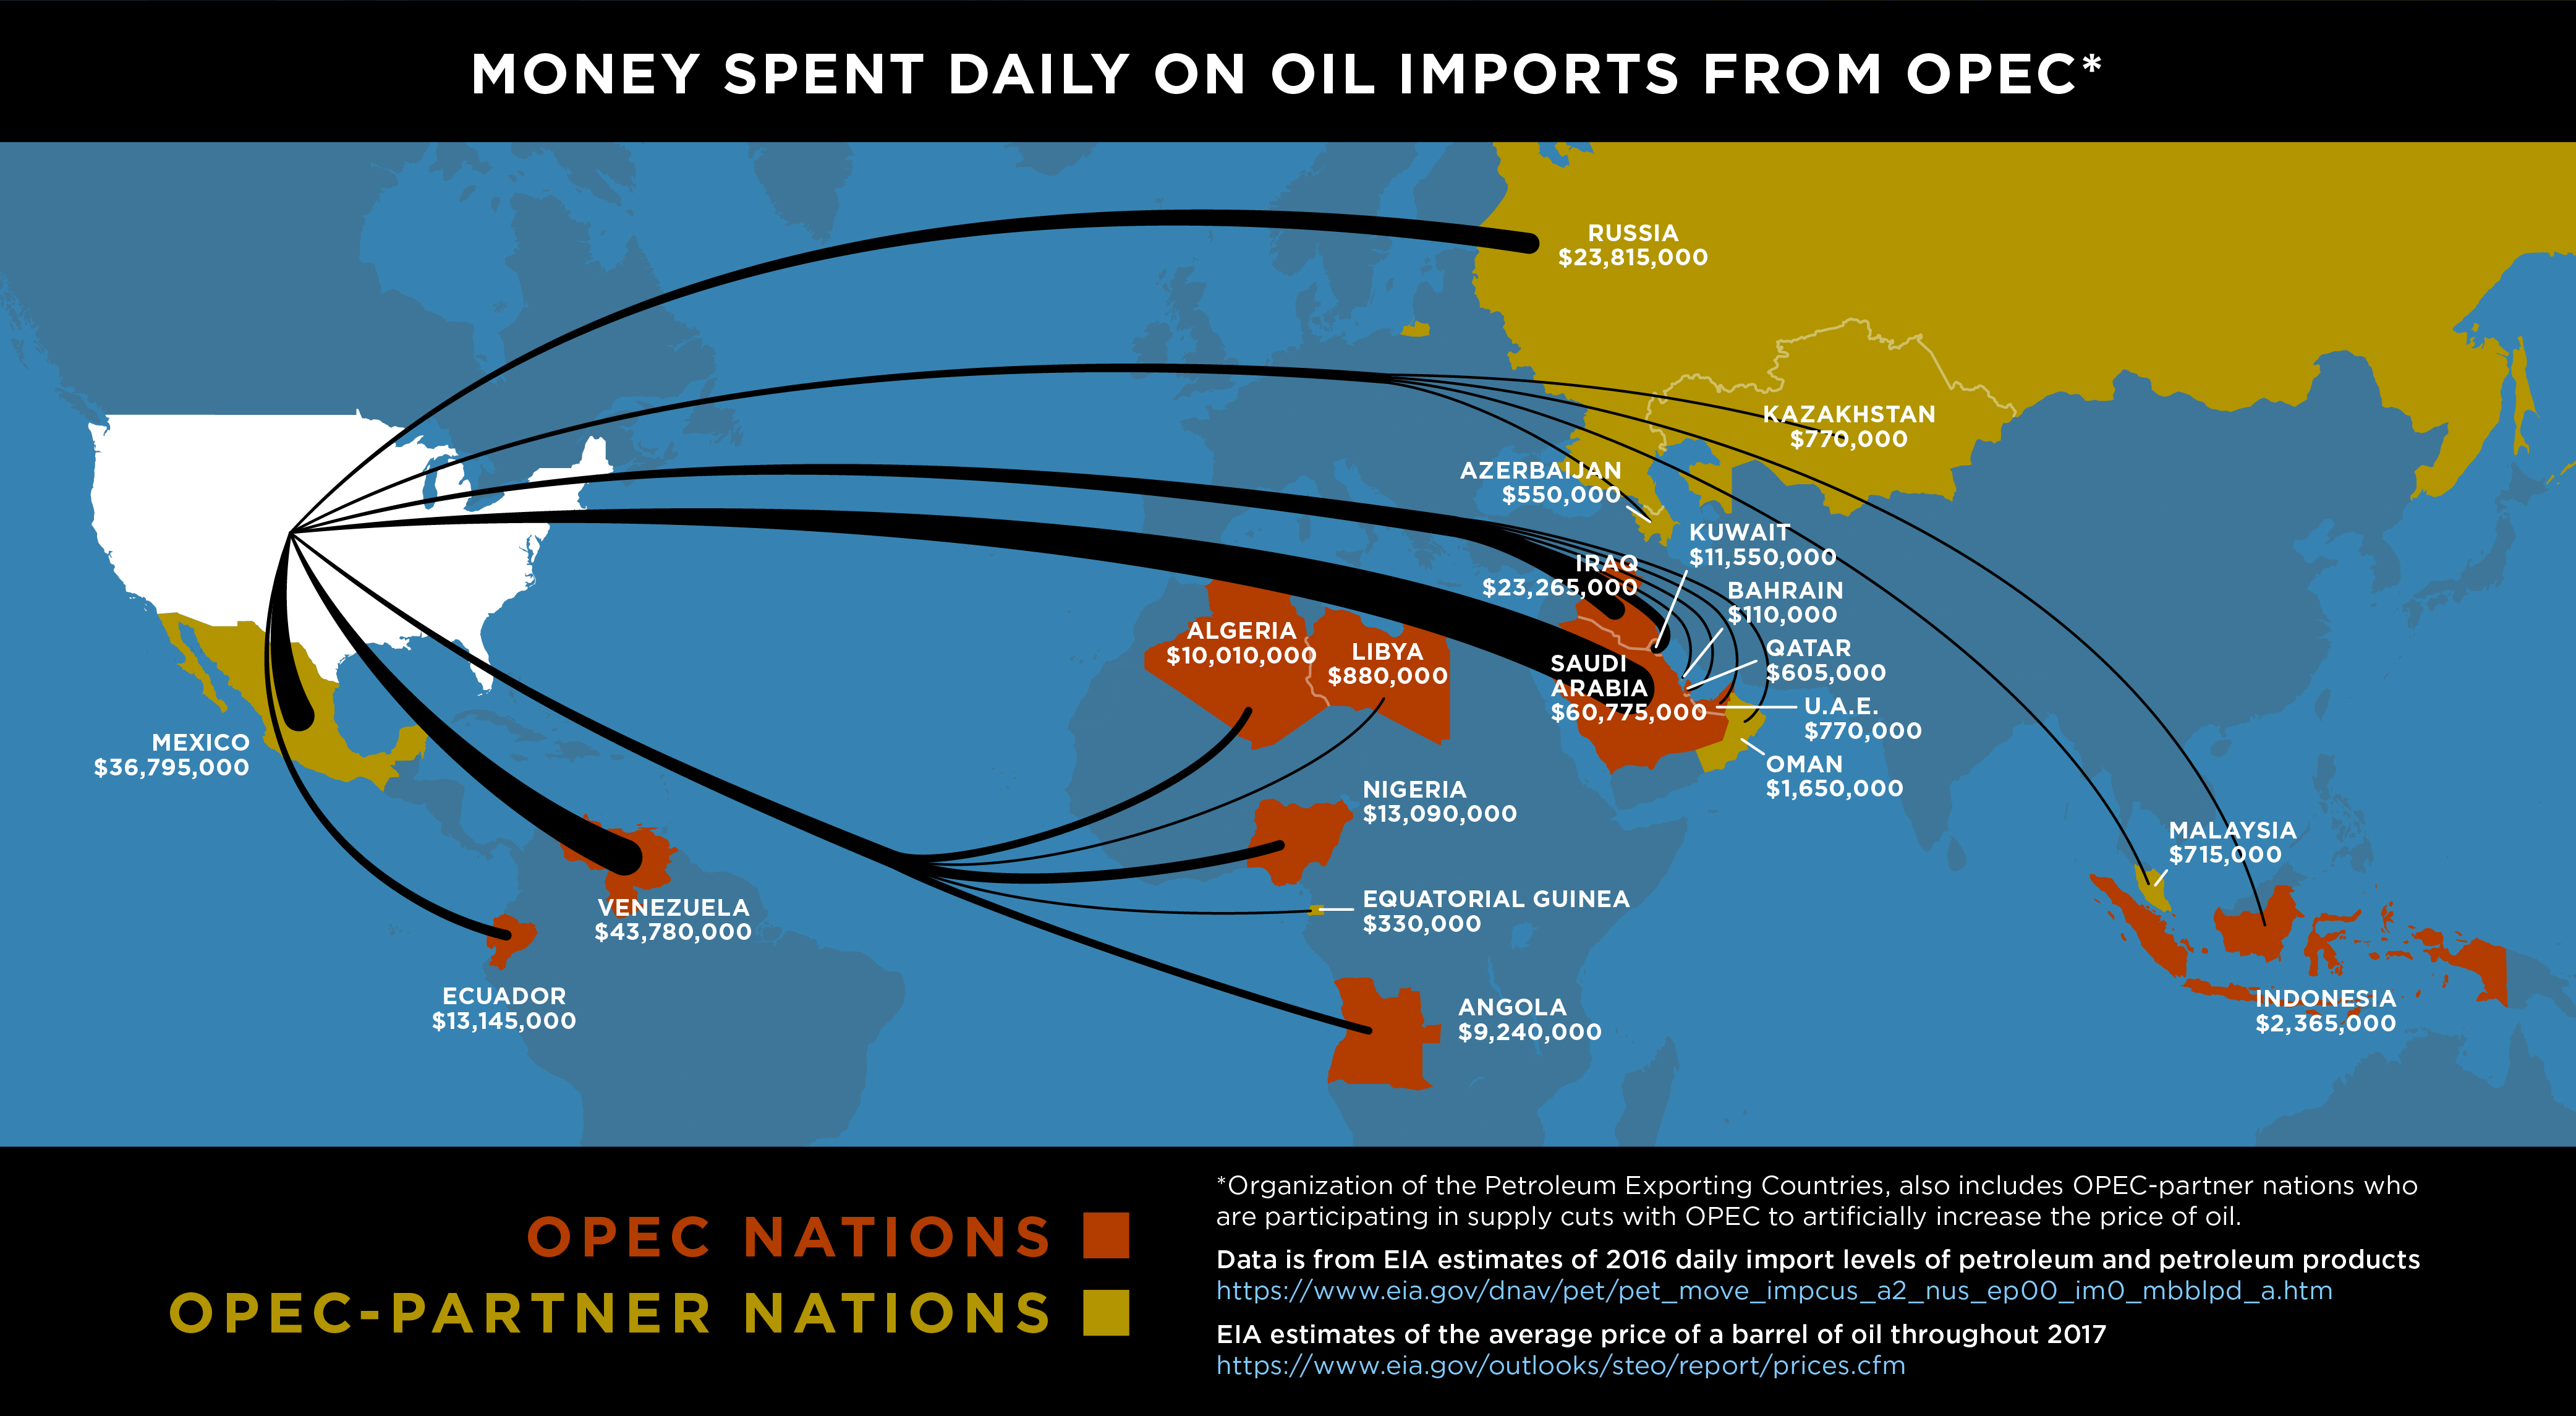 oil money to OPEC